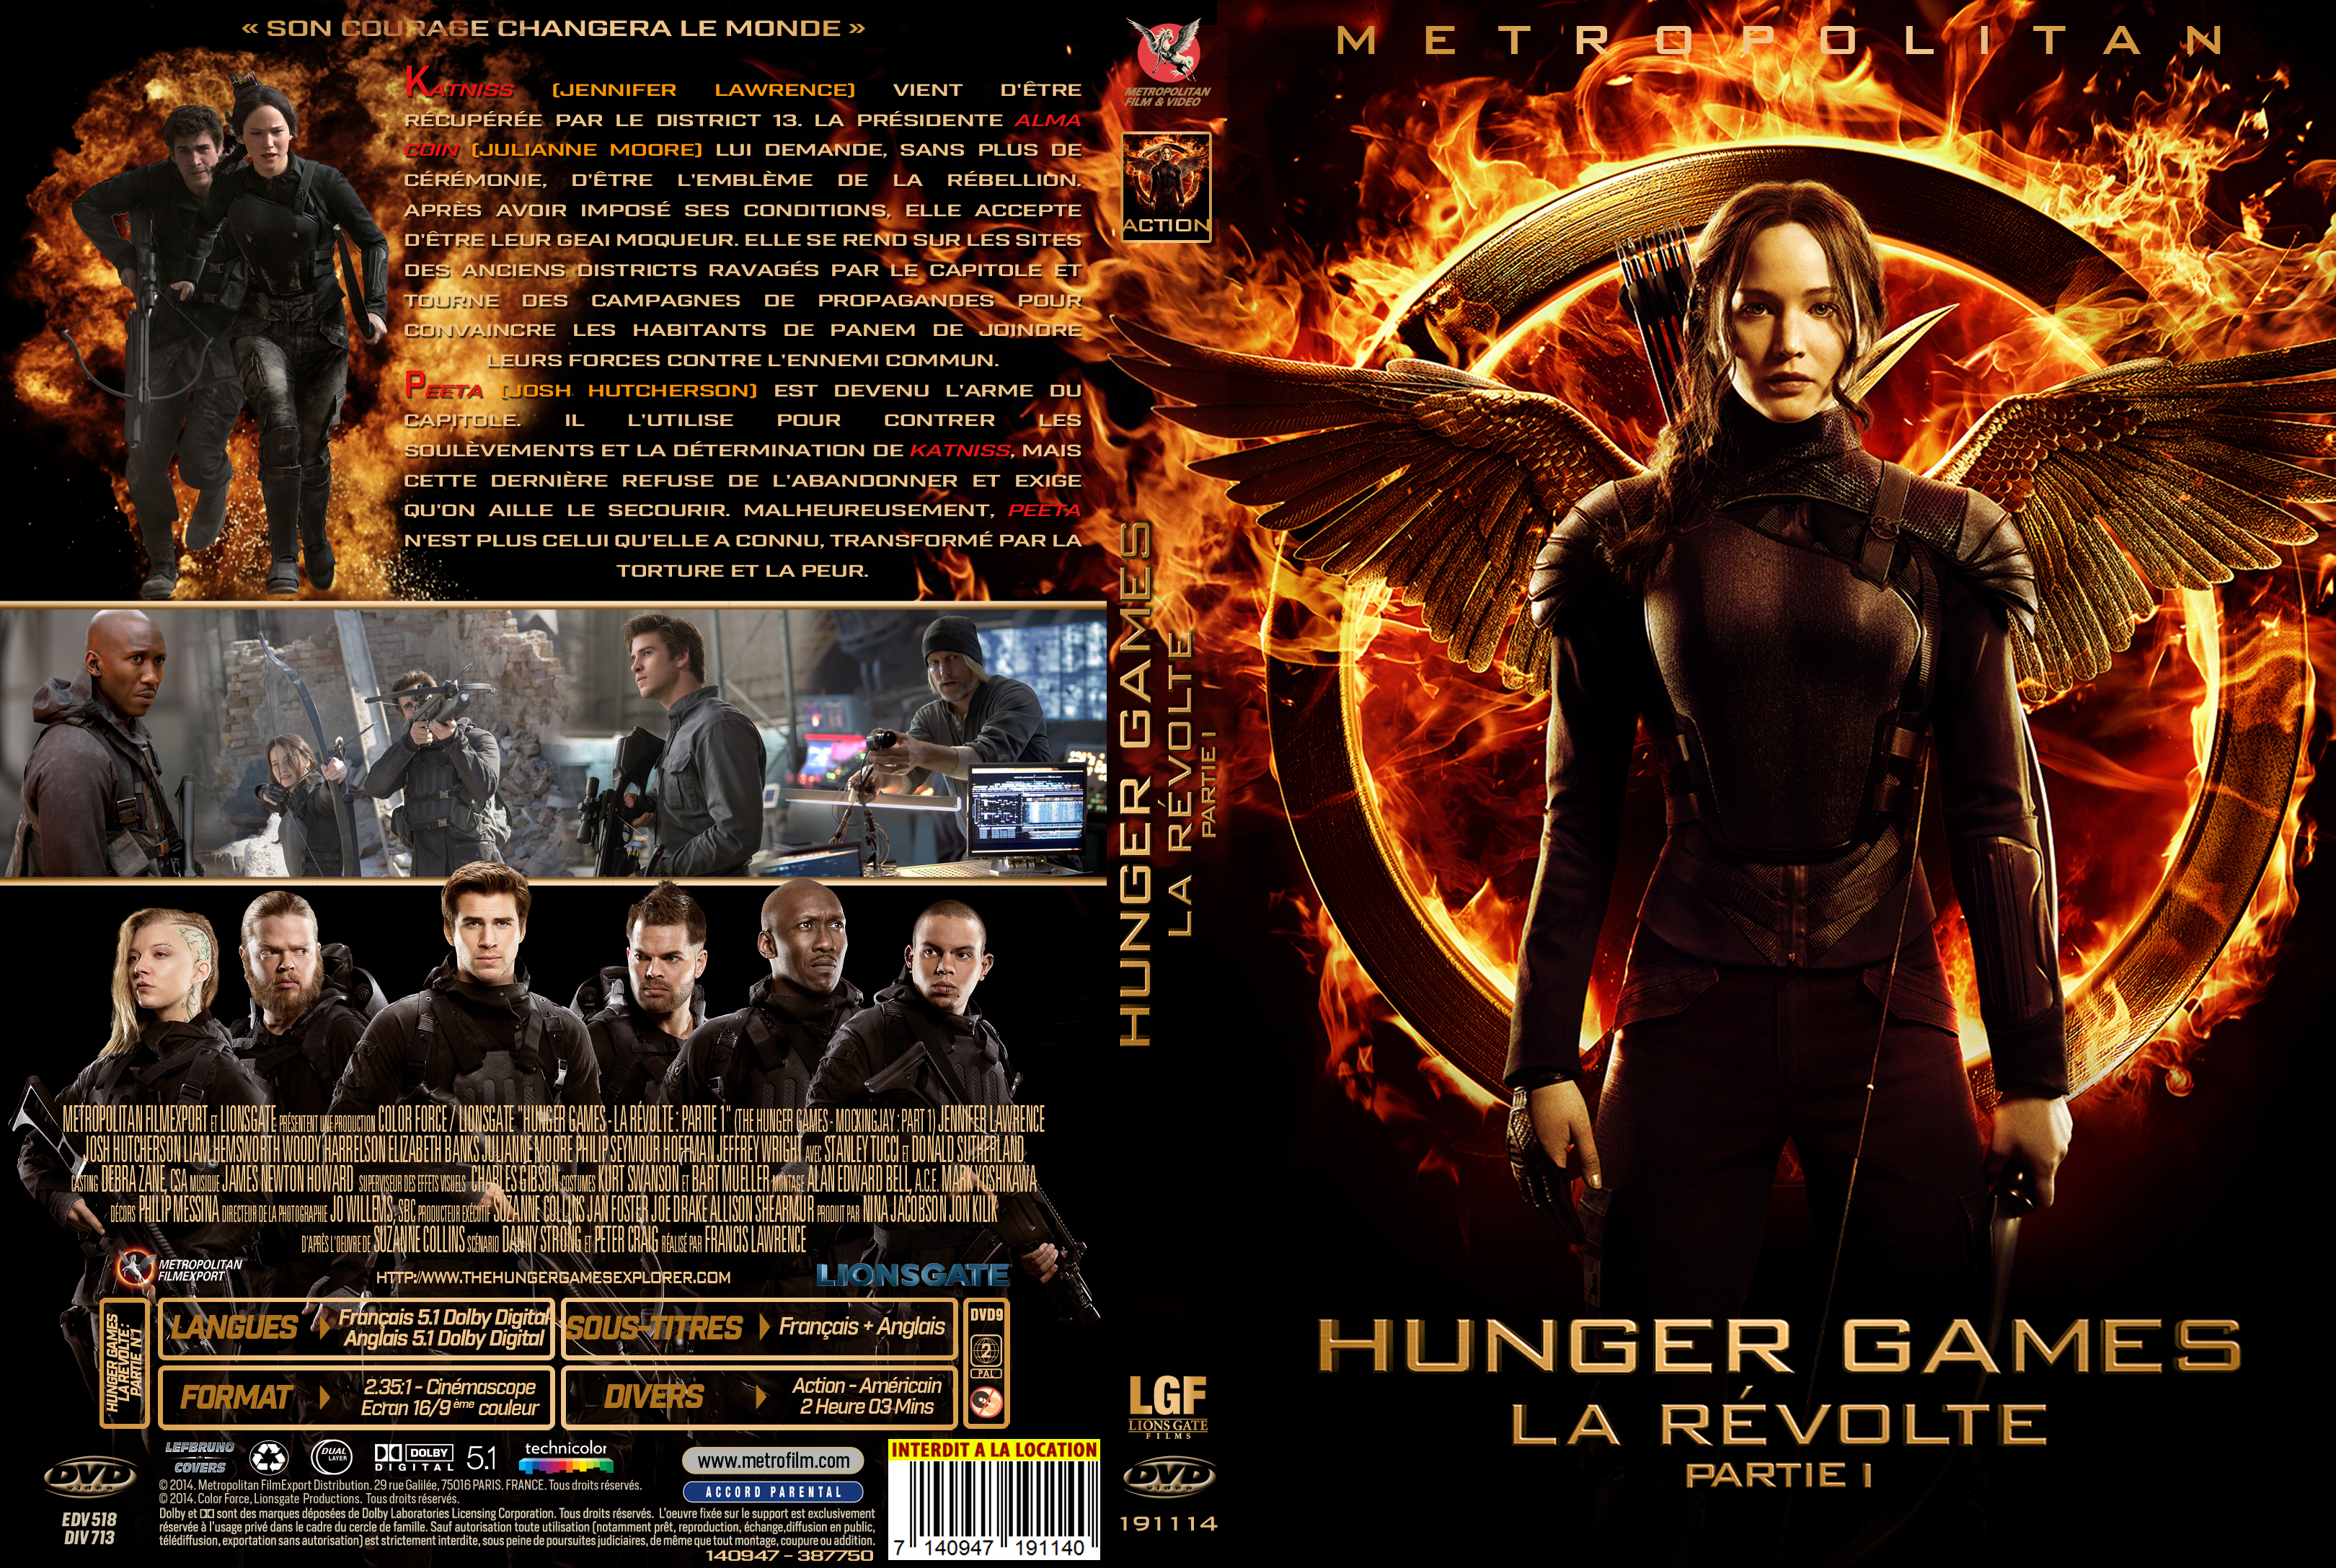 Jaquette DVD de Hunger Games La Révolte : Partie 1 custom - Cinéma Passion